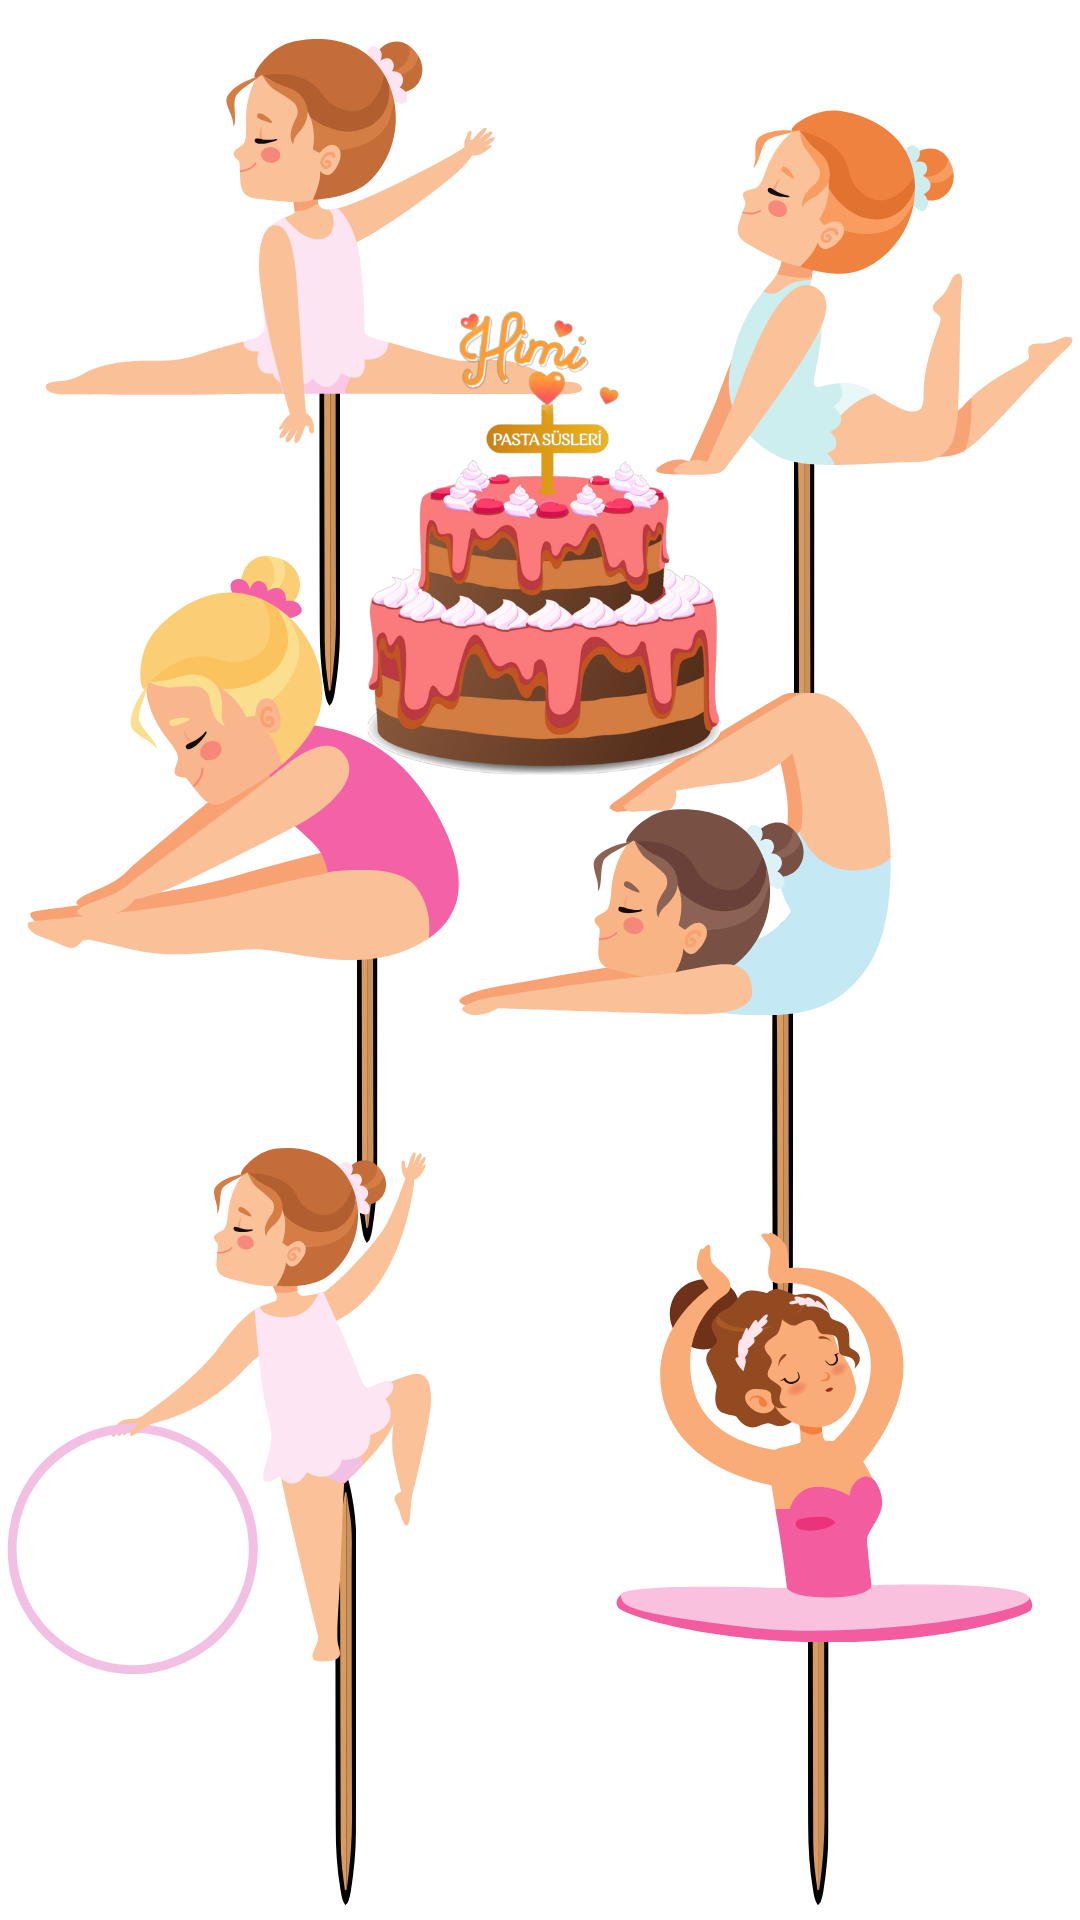 Balerin Jimnastik Doğum Günü Pasta Süsleri Kız Erkek Çocuk Maket Pasta Kürdanı Cupcake Kürdan Süsler M47